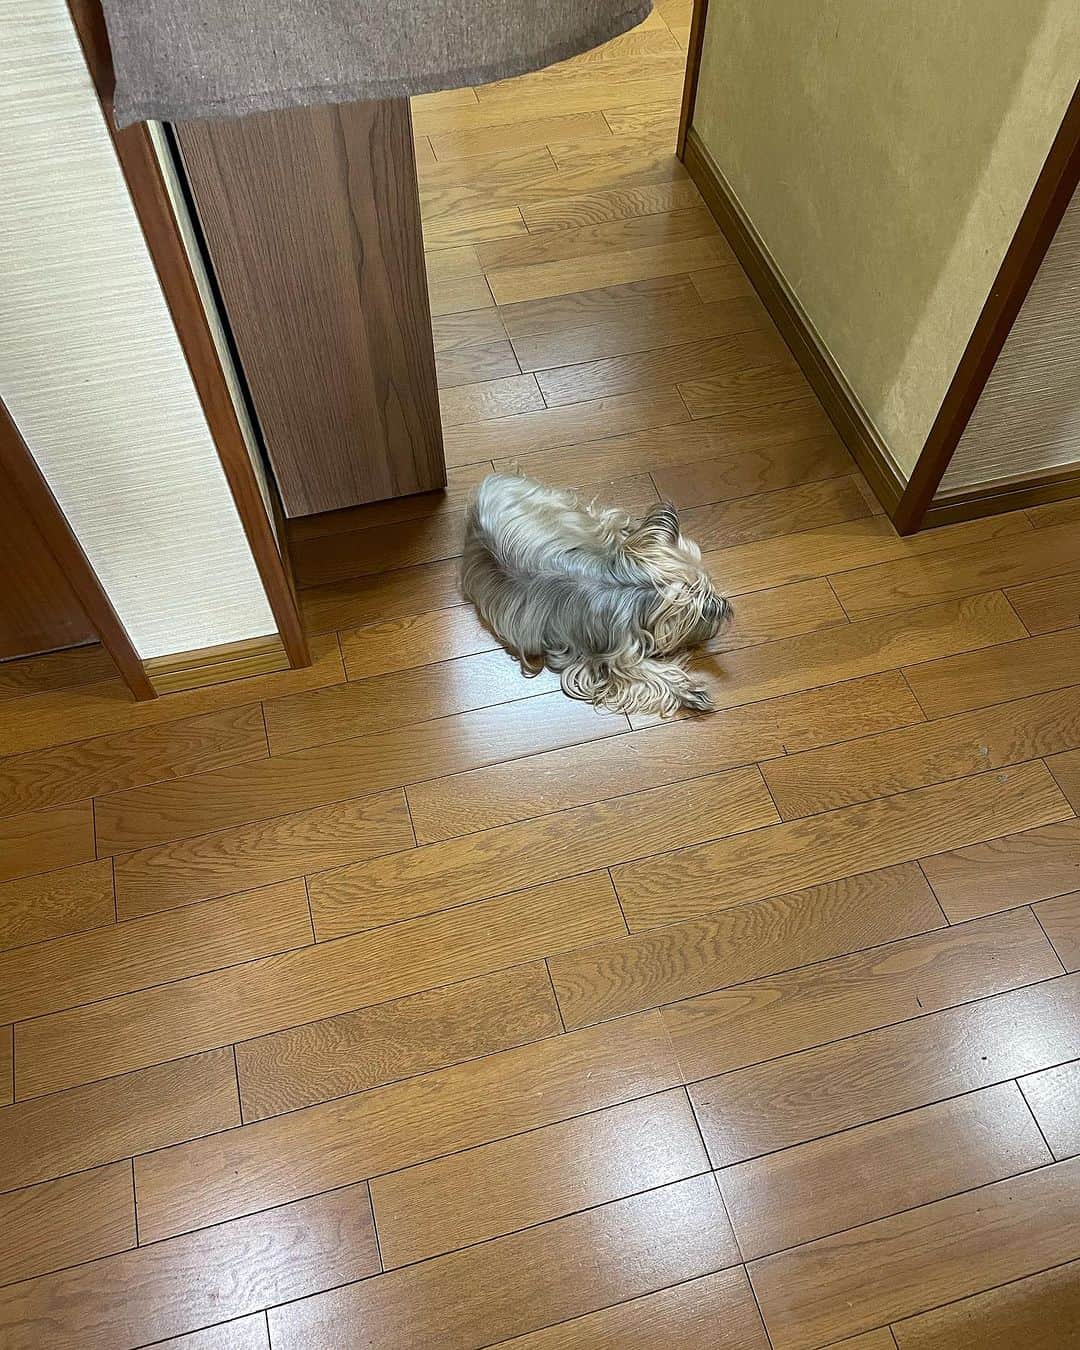 飯島直子さんのインスタグラム写真 - (飯島直子Instagram)「こんにちは^ - ^♪  こちらは暑くなってきました  今週いっぱい夏ですね  昨日の緑の実は夏みかんです すこし病気になりかけていましたが、しっかり実がついてきました^_^  2キロとは…愛犬の体重です  散歩は十分です^_^  むかし、愛犬を抱いて遠くまで散歩へいき　あまりの疲労にタクシーに乗って帰ってきました  12.13日ほへんじすこしです＾＾  mikarin父誕生日おめでとう♪ 両親共々元気で幸せだね^ - ^ たくさん親孝行してあげてね！ 末っ子はかわいい…(*´-`)  ta.m1974  49才誕生日おめでとう♪ステキな一年になりますように^ - ^  shishun誕生日おめでとう♪ 素晴らしいお母さんだね！ 楽しい場所、わたしも感謝^ - ^ ステキな一年にしてね♪  rapids888誕生日おめでとう♪ 娘たちからお祝いうれしいね ネイルも気分上がる♪ 良い一年になりますように^ - ^  m.s_0117母89才誕生日おめでとう♪元気に長生きしてね^ - ^♪来年は90才♪  takeo息子１７才、息子７才誕生日おめでとう♪ 同じ誕生日なんてスゴイね♪ 大パーティーだ♪良い一年になりますように^ - ^  ふぅちゃんママ結婚記念日おめでとう♪名古屋の嫁入りはステキだね^ - ^ 息子も結婚おめでとう♪ 旦那さんと愛犬た3人いつまでも元気でお幸せに…^_^  moyuhi53才誕生日おめでとう♪娘からスマートウォッチ♪ これでウォーキング大会も完走できるね^ - ^お休み楽しんでね 良い一年になりますように♪  nana！5月にコロナ、当日誕生日…おそくなったけど誕生日おめでとう♪ 良い一年にしてね♪いつもありがとう^ - ^  まさよ！5年も！もうやらなくていいとおもう、もう十分！ 自分と家族を大事にしよう^ - ^ ガンバレ！まさよ！  ヒトメタニューモウィルス？！ 知らなかった！次々出てくるね…大丈夫？！nishiche！  母がガンの告知…ずっと強くいなきゃと思うと泣けてくる… つらいね、泣いたっていいんだよ、ひとりで背負うのはかなり厳しい、誰でもいい、キモチを共有できるひとに話してみてね そして、お母さんに元気に長生きしてもらうために、治療にケアをしてあげてね れいこ！がんばろう！！  眠れない夜あるよ、諦めておきるよ^ - ^千葉の美奈子！  オリオン座出てるのね？ キタムラくんはロマンチスト笑  よっこ♪  えつこ！父の付き添いお疲れさま(*´-`)お薬ふえると大変だよね…ガンバレ！  あや♪  coo8.mee6再検査で大学病院へ、何かあっても早期発見早期治療だよ！頑張ってきてᕦ(ò_óˇ)ᕤ  さなえ♪  浜のぴょんは耳かきだいすき わたしもだいすき♪  順子♪  膝サポーターつけて！ひでやん！  腰！ちゃんと診てもらおう！ かおりんご！！  アイコン変えた、了解！ licats^ - ^  あちゃこ♪  グランディス懐かしい！ 横浜ヨーキーママ♪  pu_fa風邪で味覚障害になるよ！でも一度検査してみてね！  チケットとれた〜やったね！ クミチン♪  いい事なーい！悪いことなければ良し^ - ^yopichan！  ikuyoya職場を退職！ スッキリ良かった^ - ^ 今日から笑顔の生活でね♡  ららママファイト！ほどほどにがんばろうね٩(๑❛ᴗ❛๑)۶  今日は残りものおかず  ローカット玄米(炊き立て)  味噌汁(残、三日前)  ハンペンツナ(賞味期限10日)  グラタン的な(イモ、ミートソース残)  緑なしですね、そろそろ買い物へ行かなくてはいけません  今朝は顔洗いました^ - ^  木曜日！もうすぐ連休です  今日もほどほどにがんばろうね エイエイオーでね( ´ ▽ ` )ﾉ♡」9月14日 12時36分 - naoko_iijima_705_official